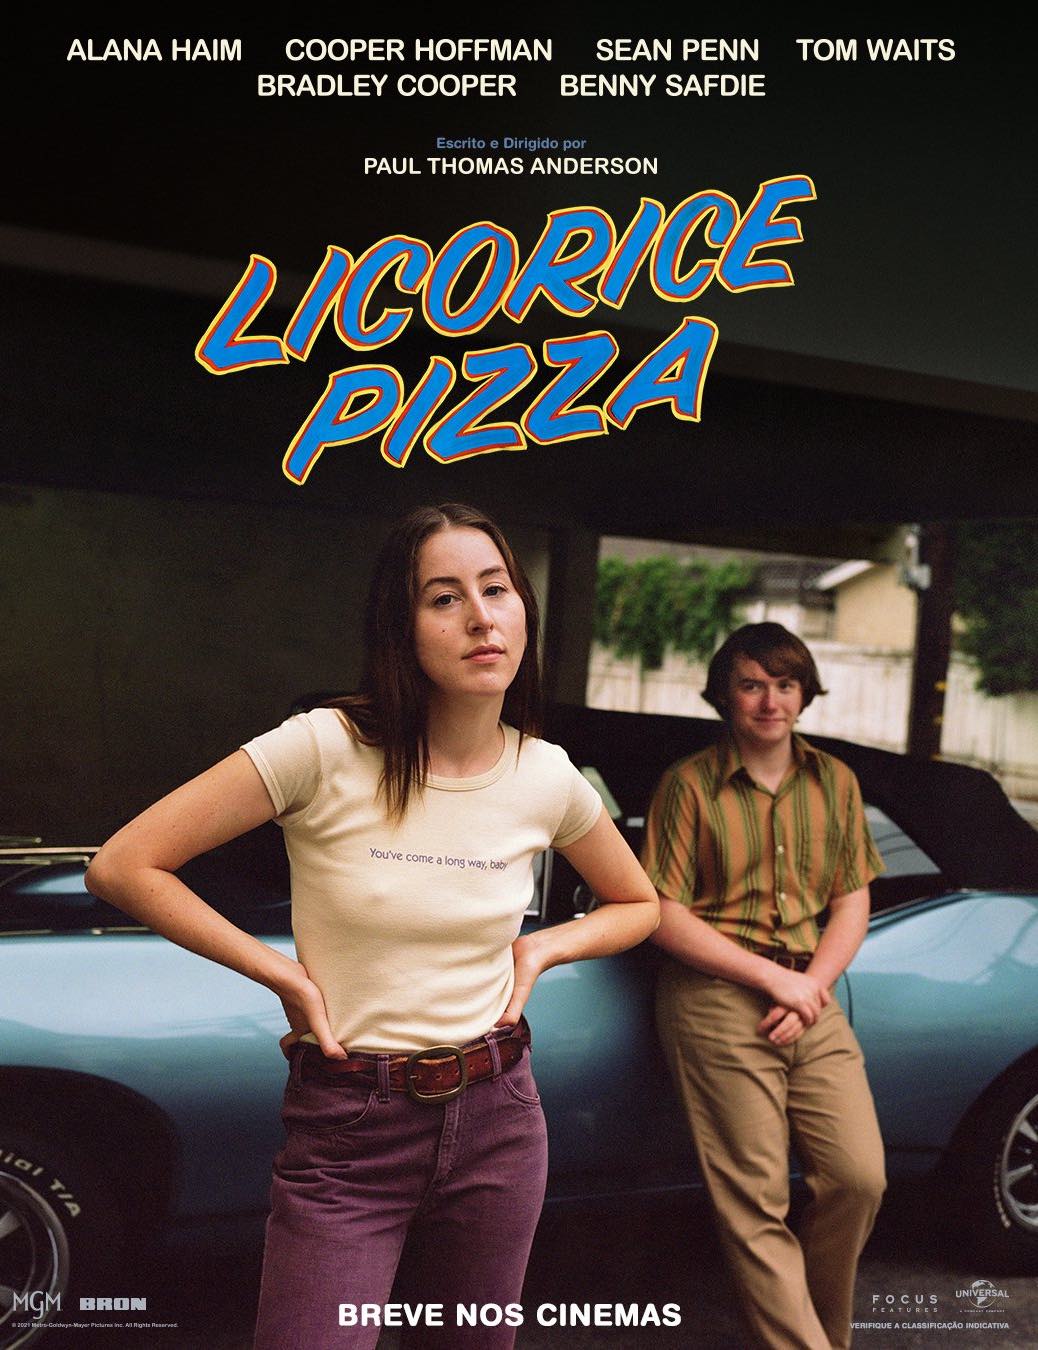 Licorice-pizza.jpg